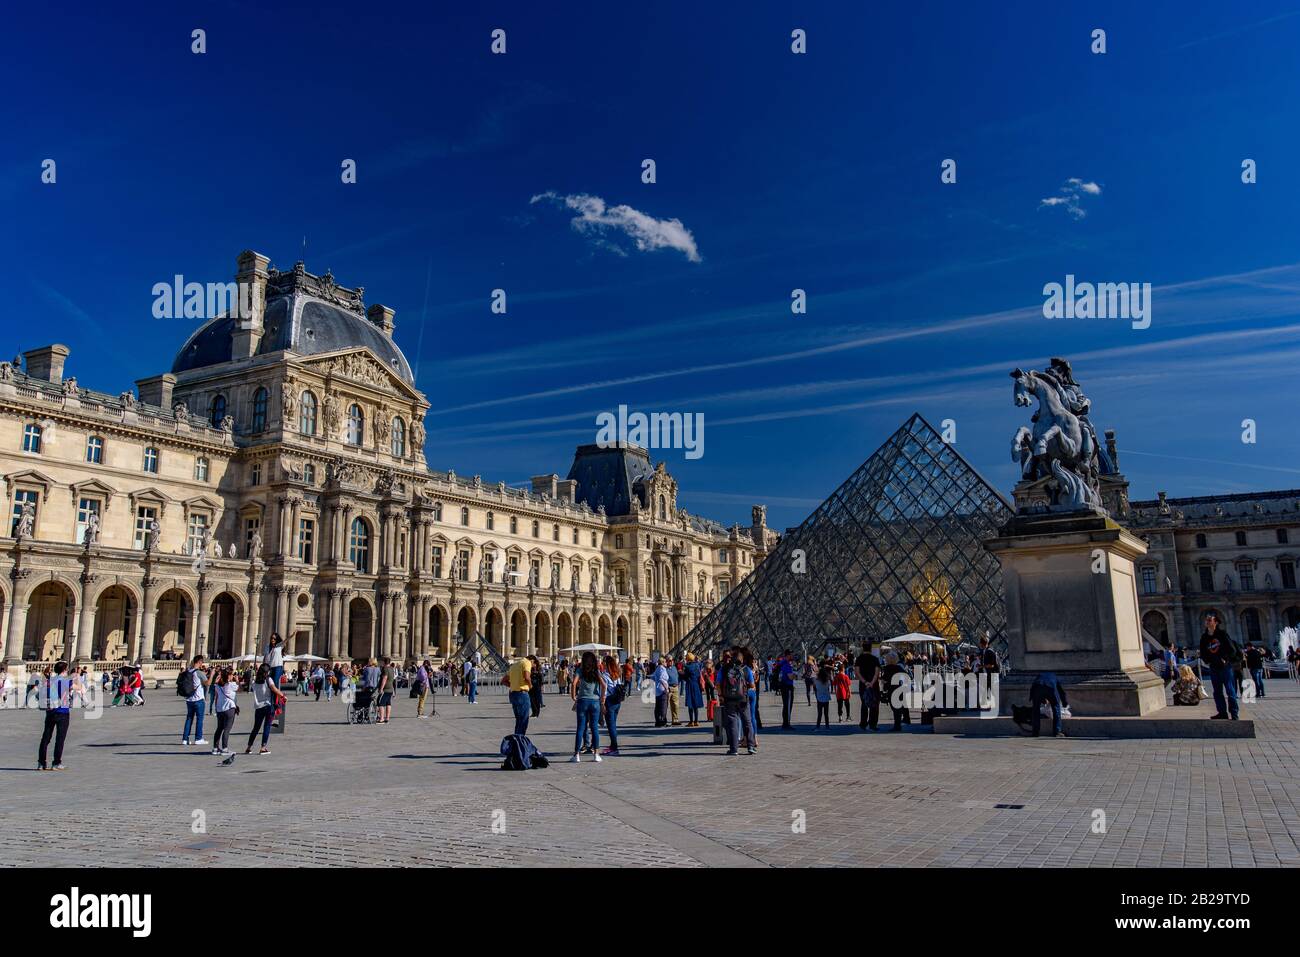 Louvre Museum (Musée du Louvre) with Pyramid, Paris, France Stock Photo